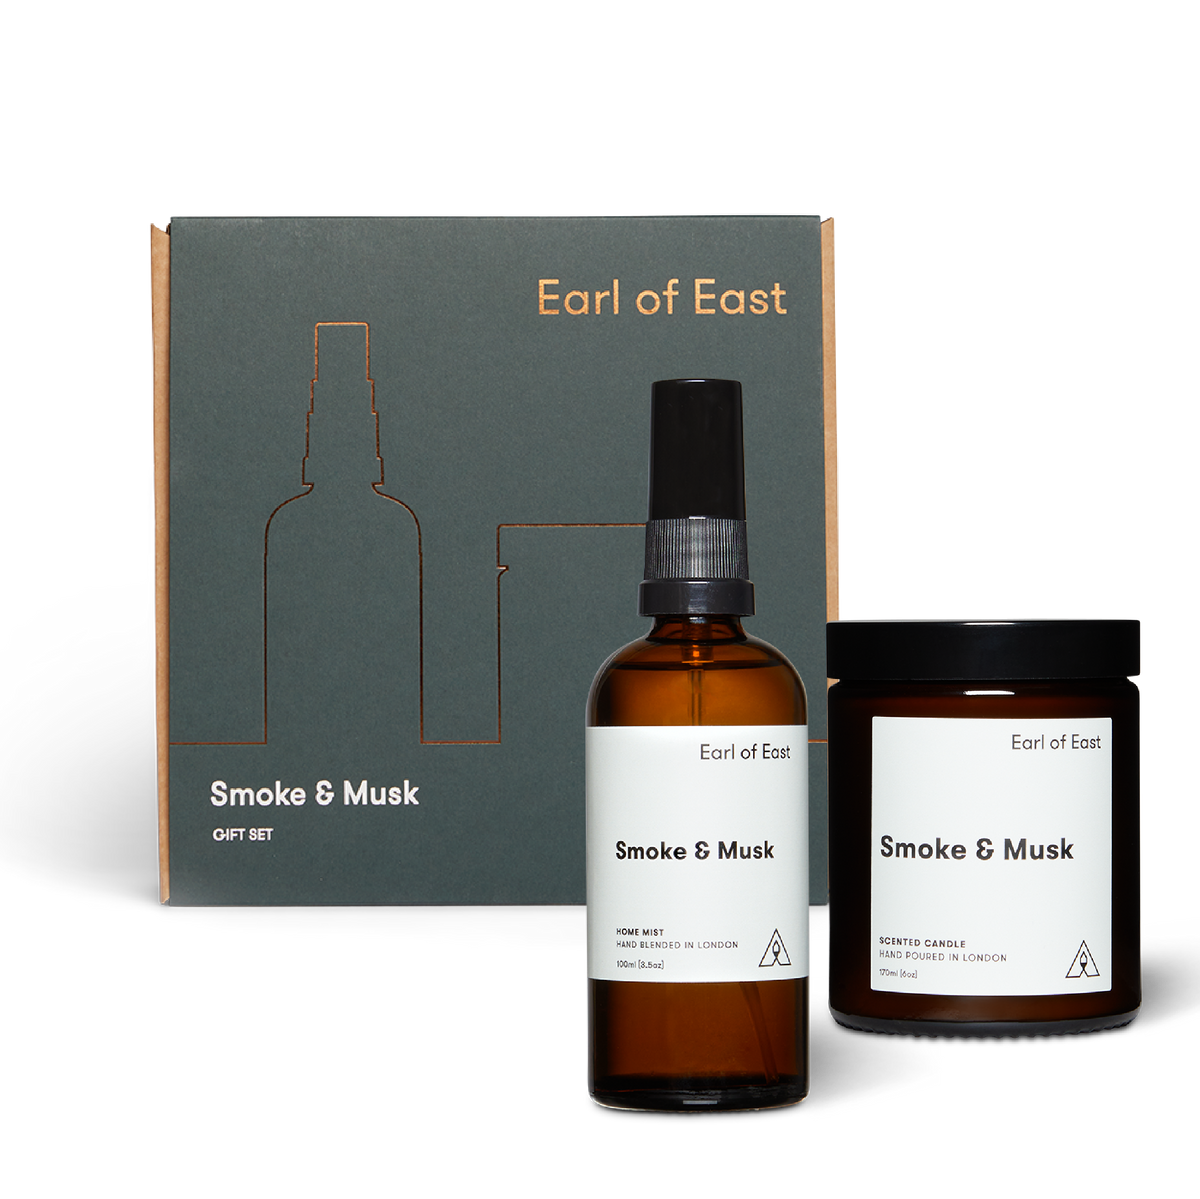 SMOKE & MUSK DUO GIFT SET BY EARL OF EAST